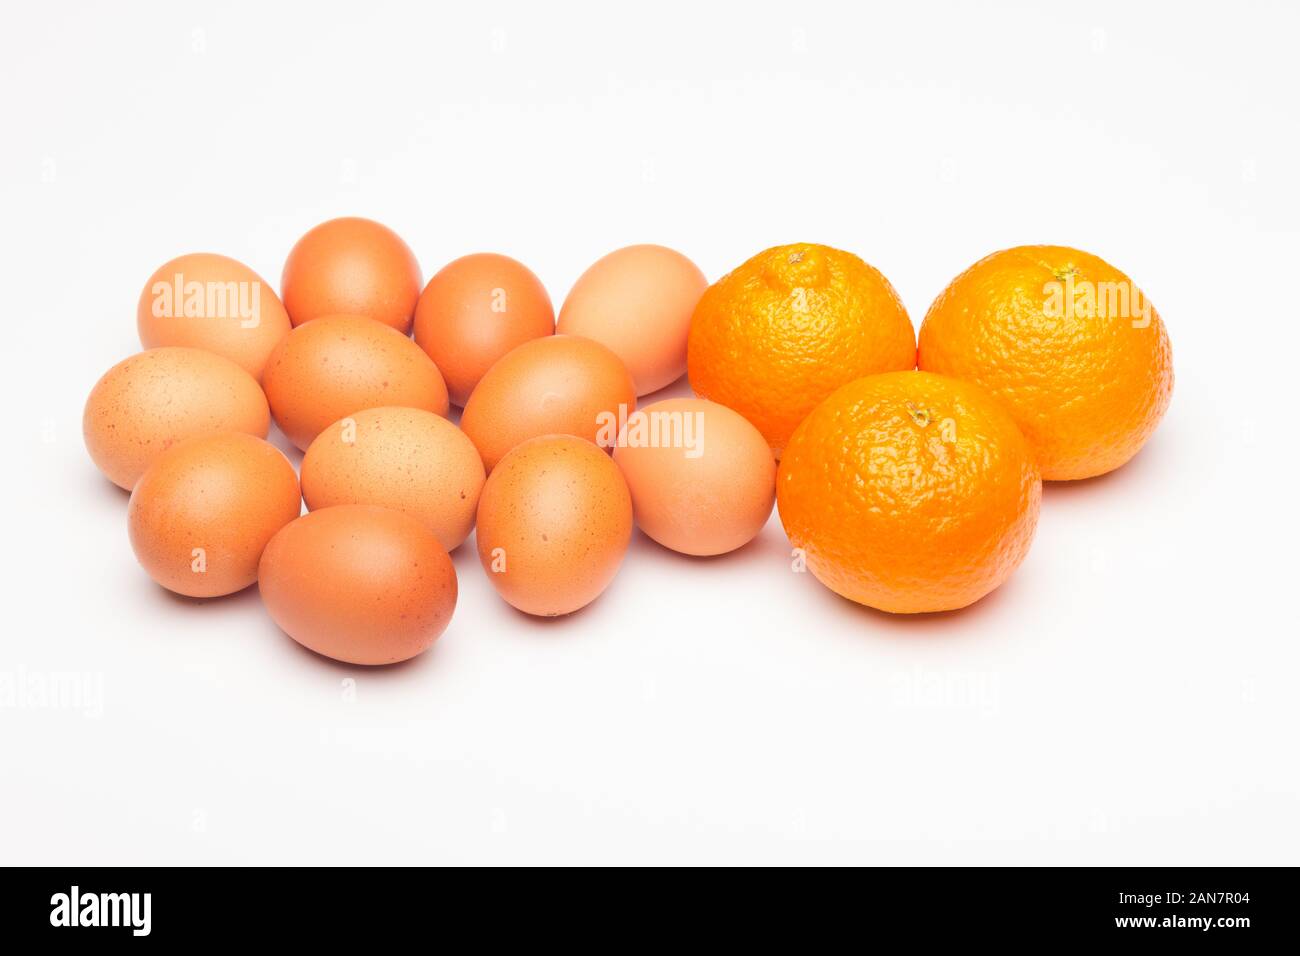 Immer noch leben der Eier und Tangerinen, Eier Cholesterin aber haben Hunderte von positiven Eigenschaften, Tangerine ist eine Frucht mit vielen Vitaminen. Stockfoto